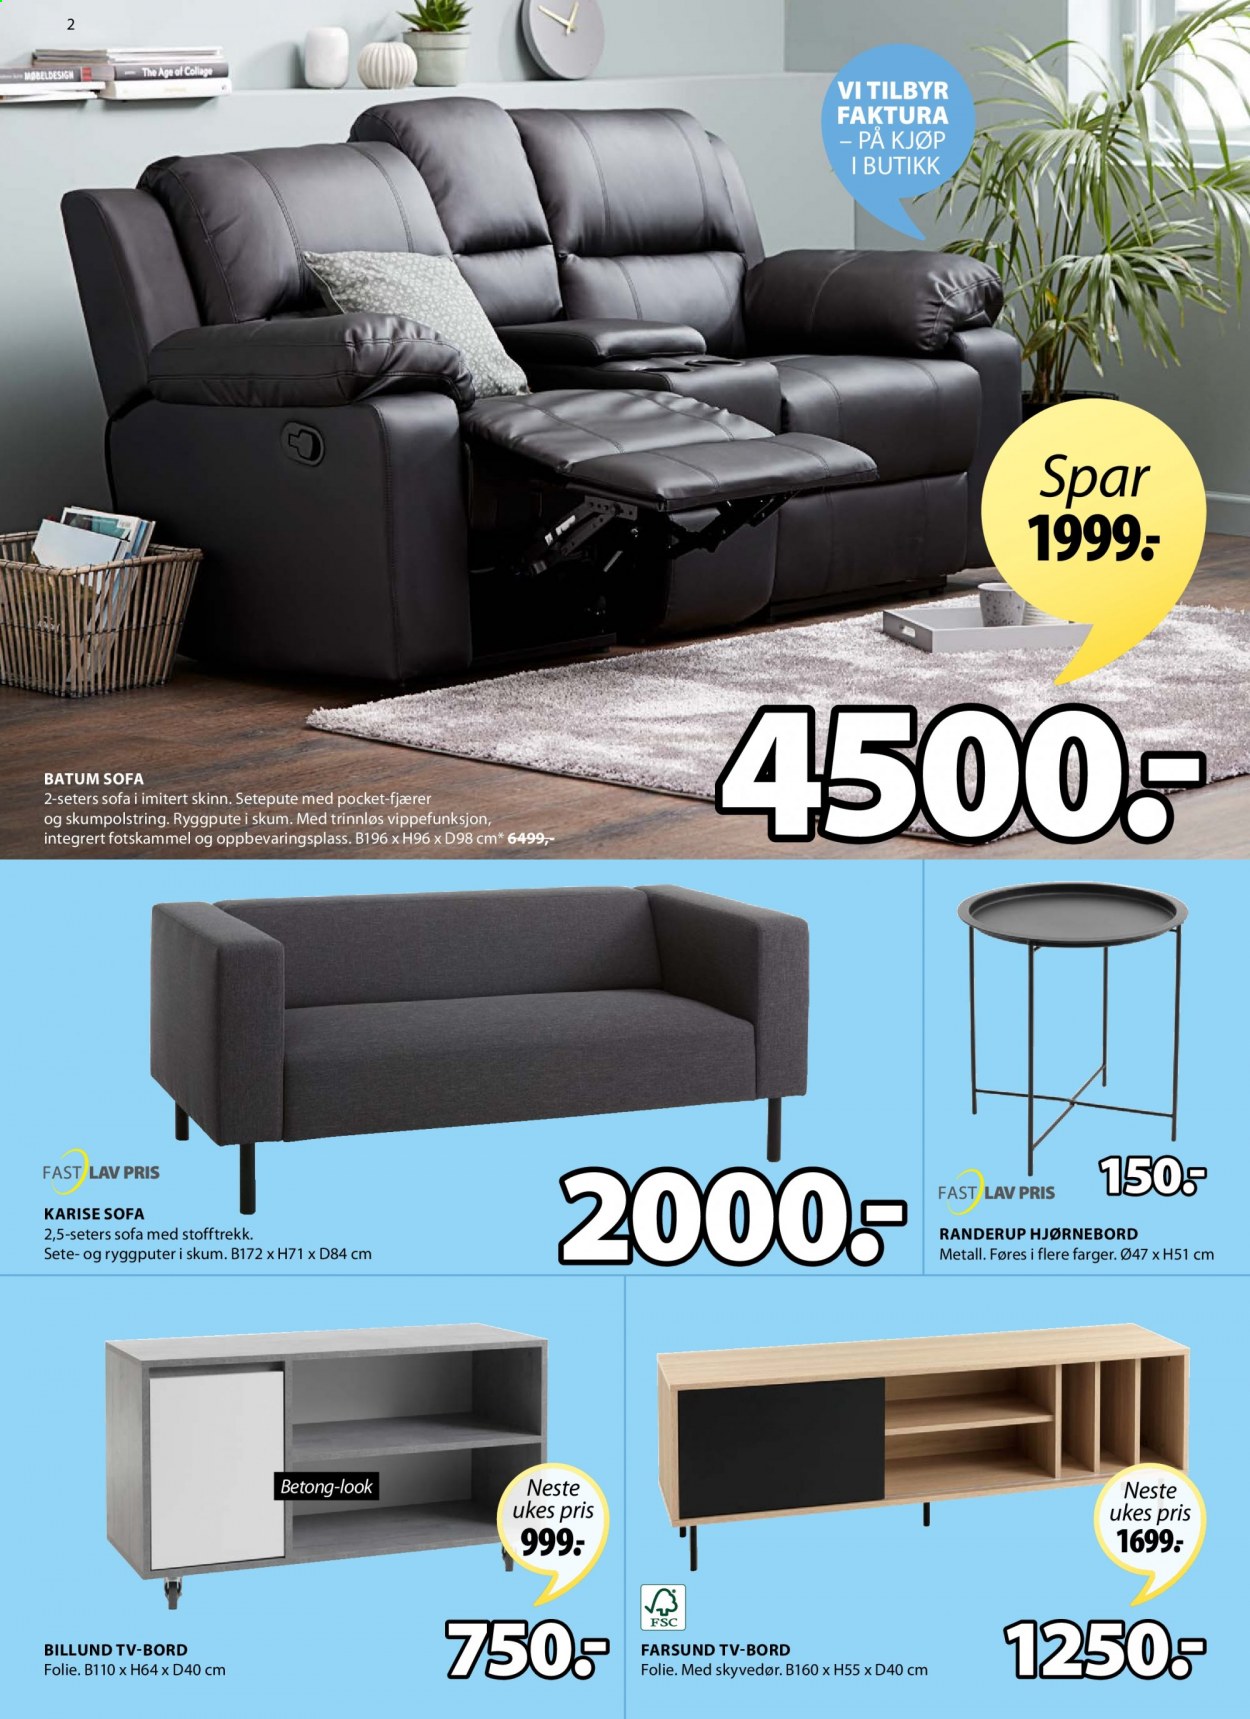 thumbnail - Kundeavis JYSK - 8.3.2021 - 13.3.2021 - Produkter fra tilbudsaviser - bord, sofa. Side 2.